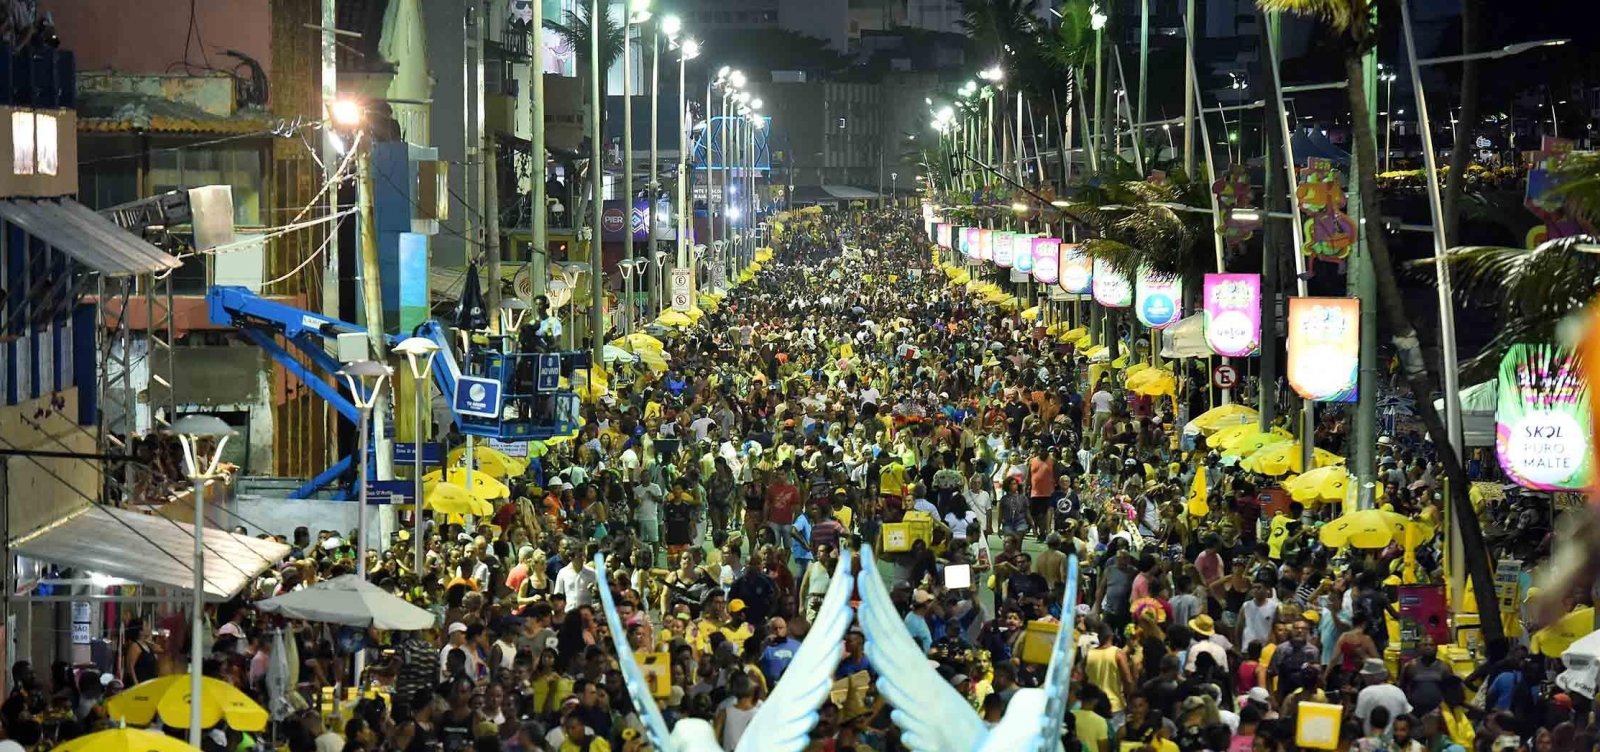 Postos de saúde fizeram 433 atendimentos no primeiro dia de carnaval